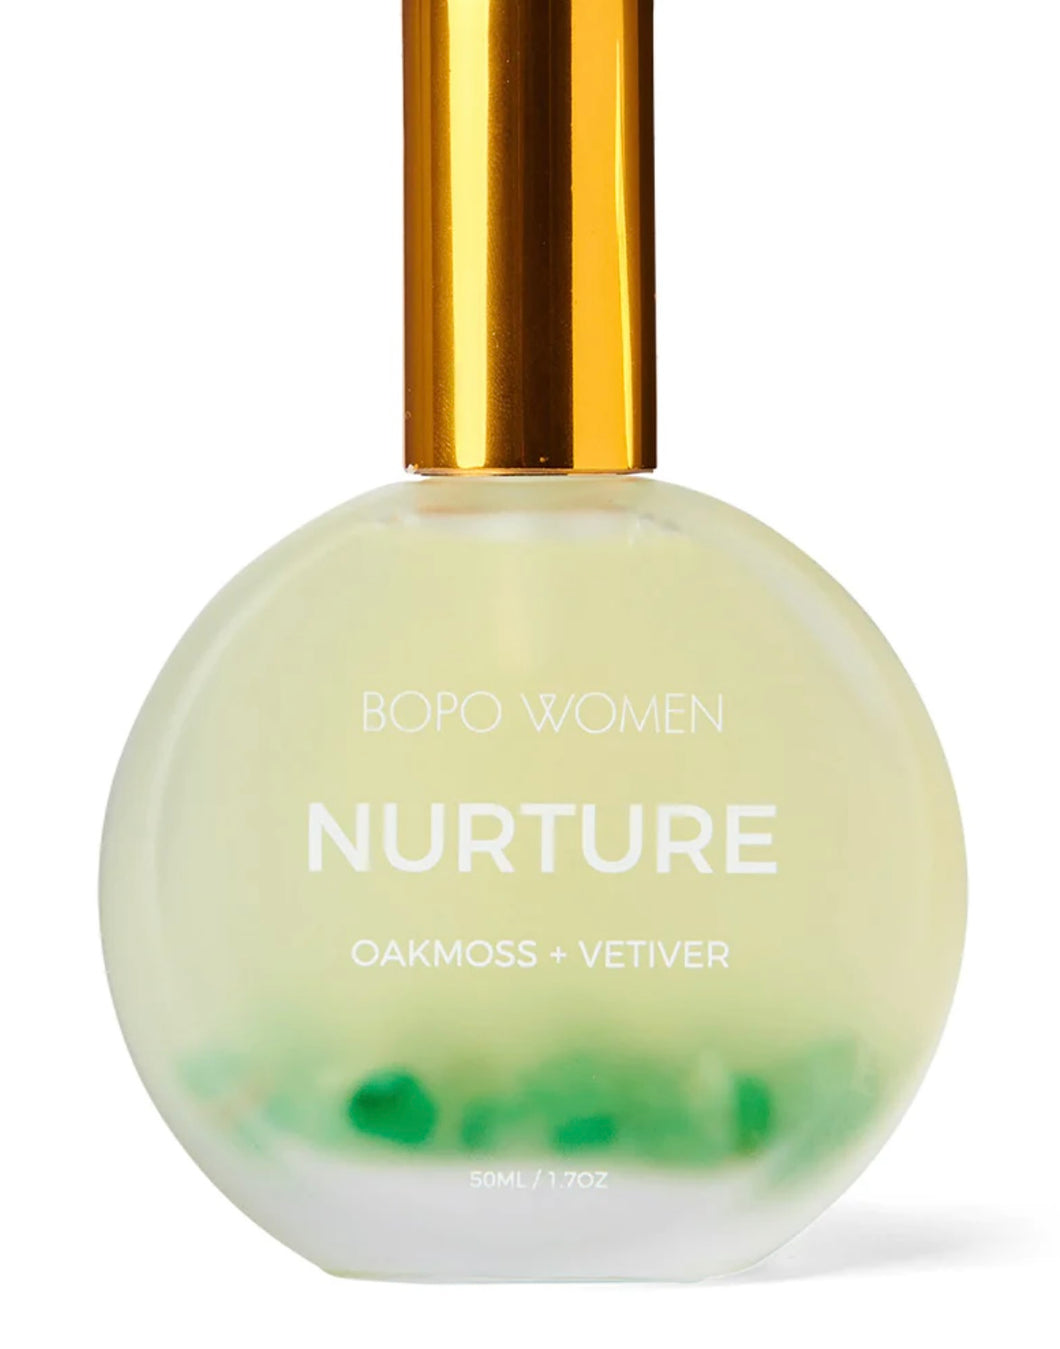 Body Mist / Nurture // Bopo Women